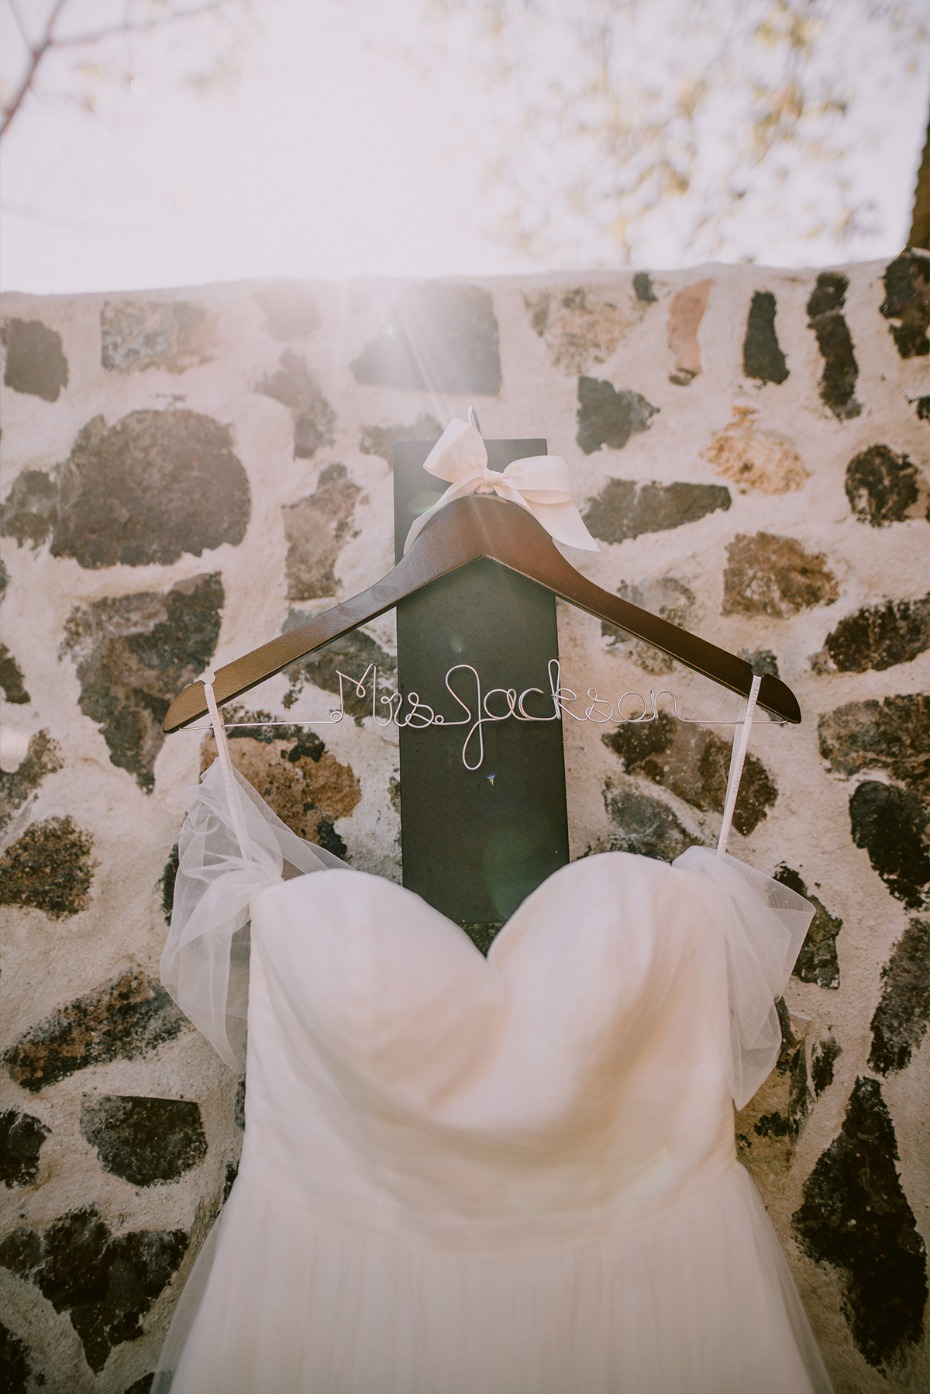 David's Bridal Chiffon wedding dress and personalized hanger